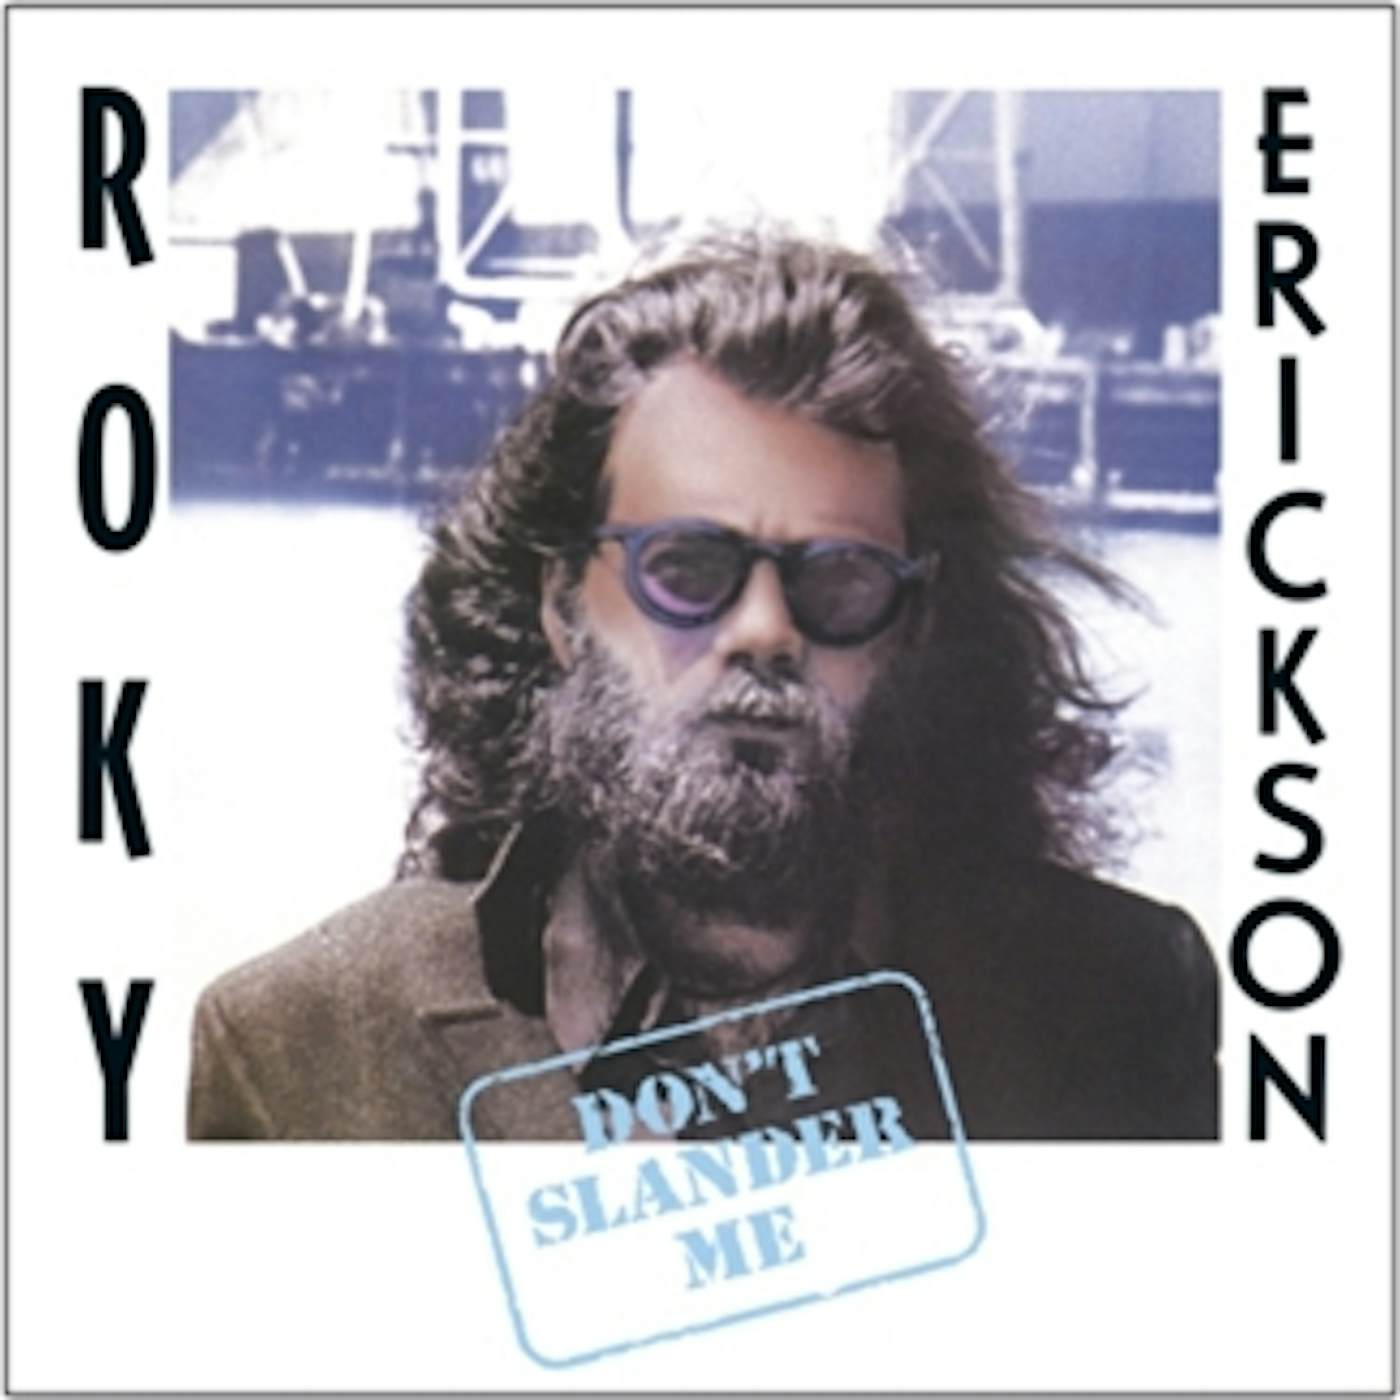 Roky Erickson DON'T SLANDER ME CD